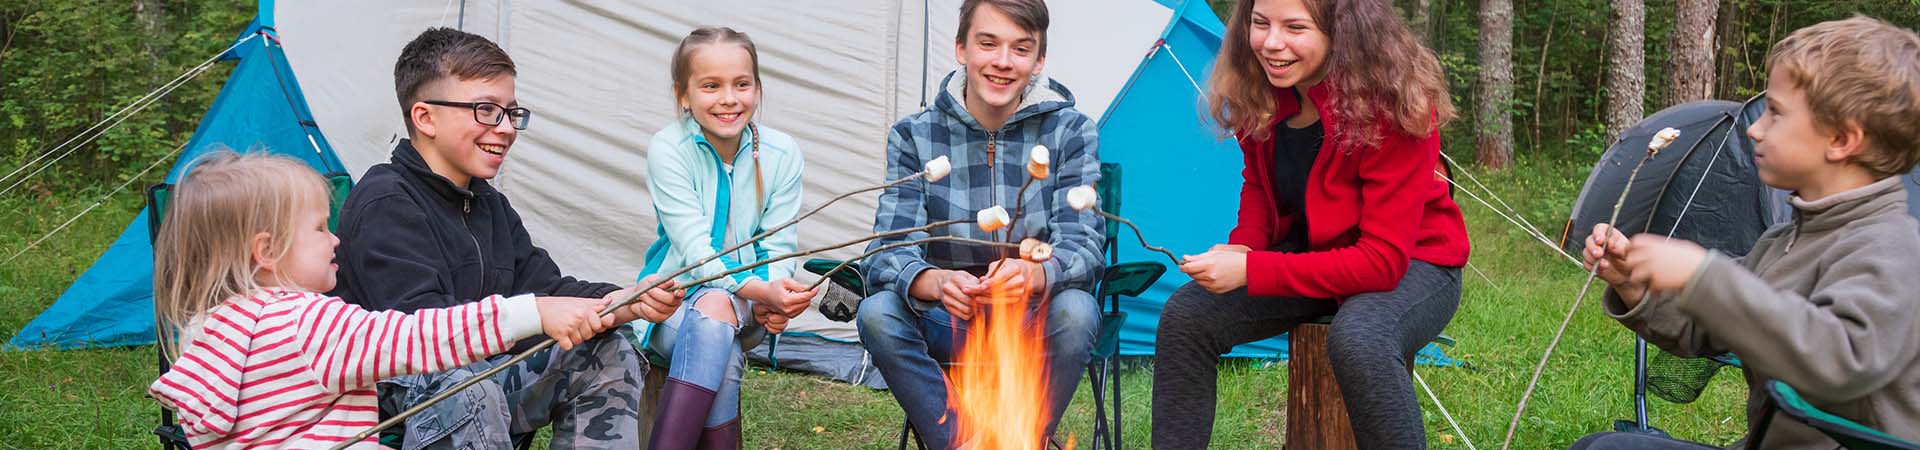 Camp de vacances : des enfants font griller des marshmallows autour d’un feu de camp.